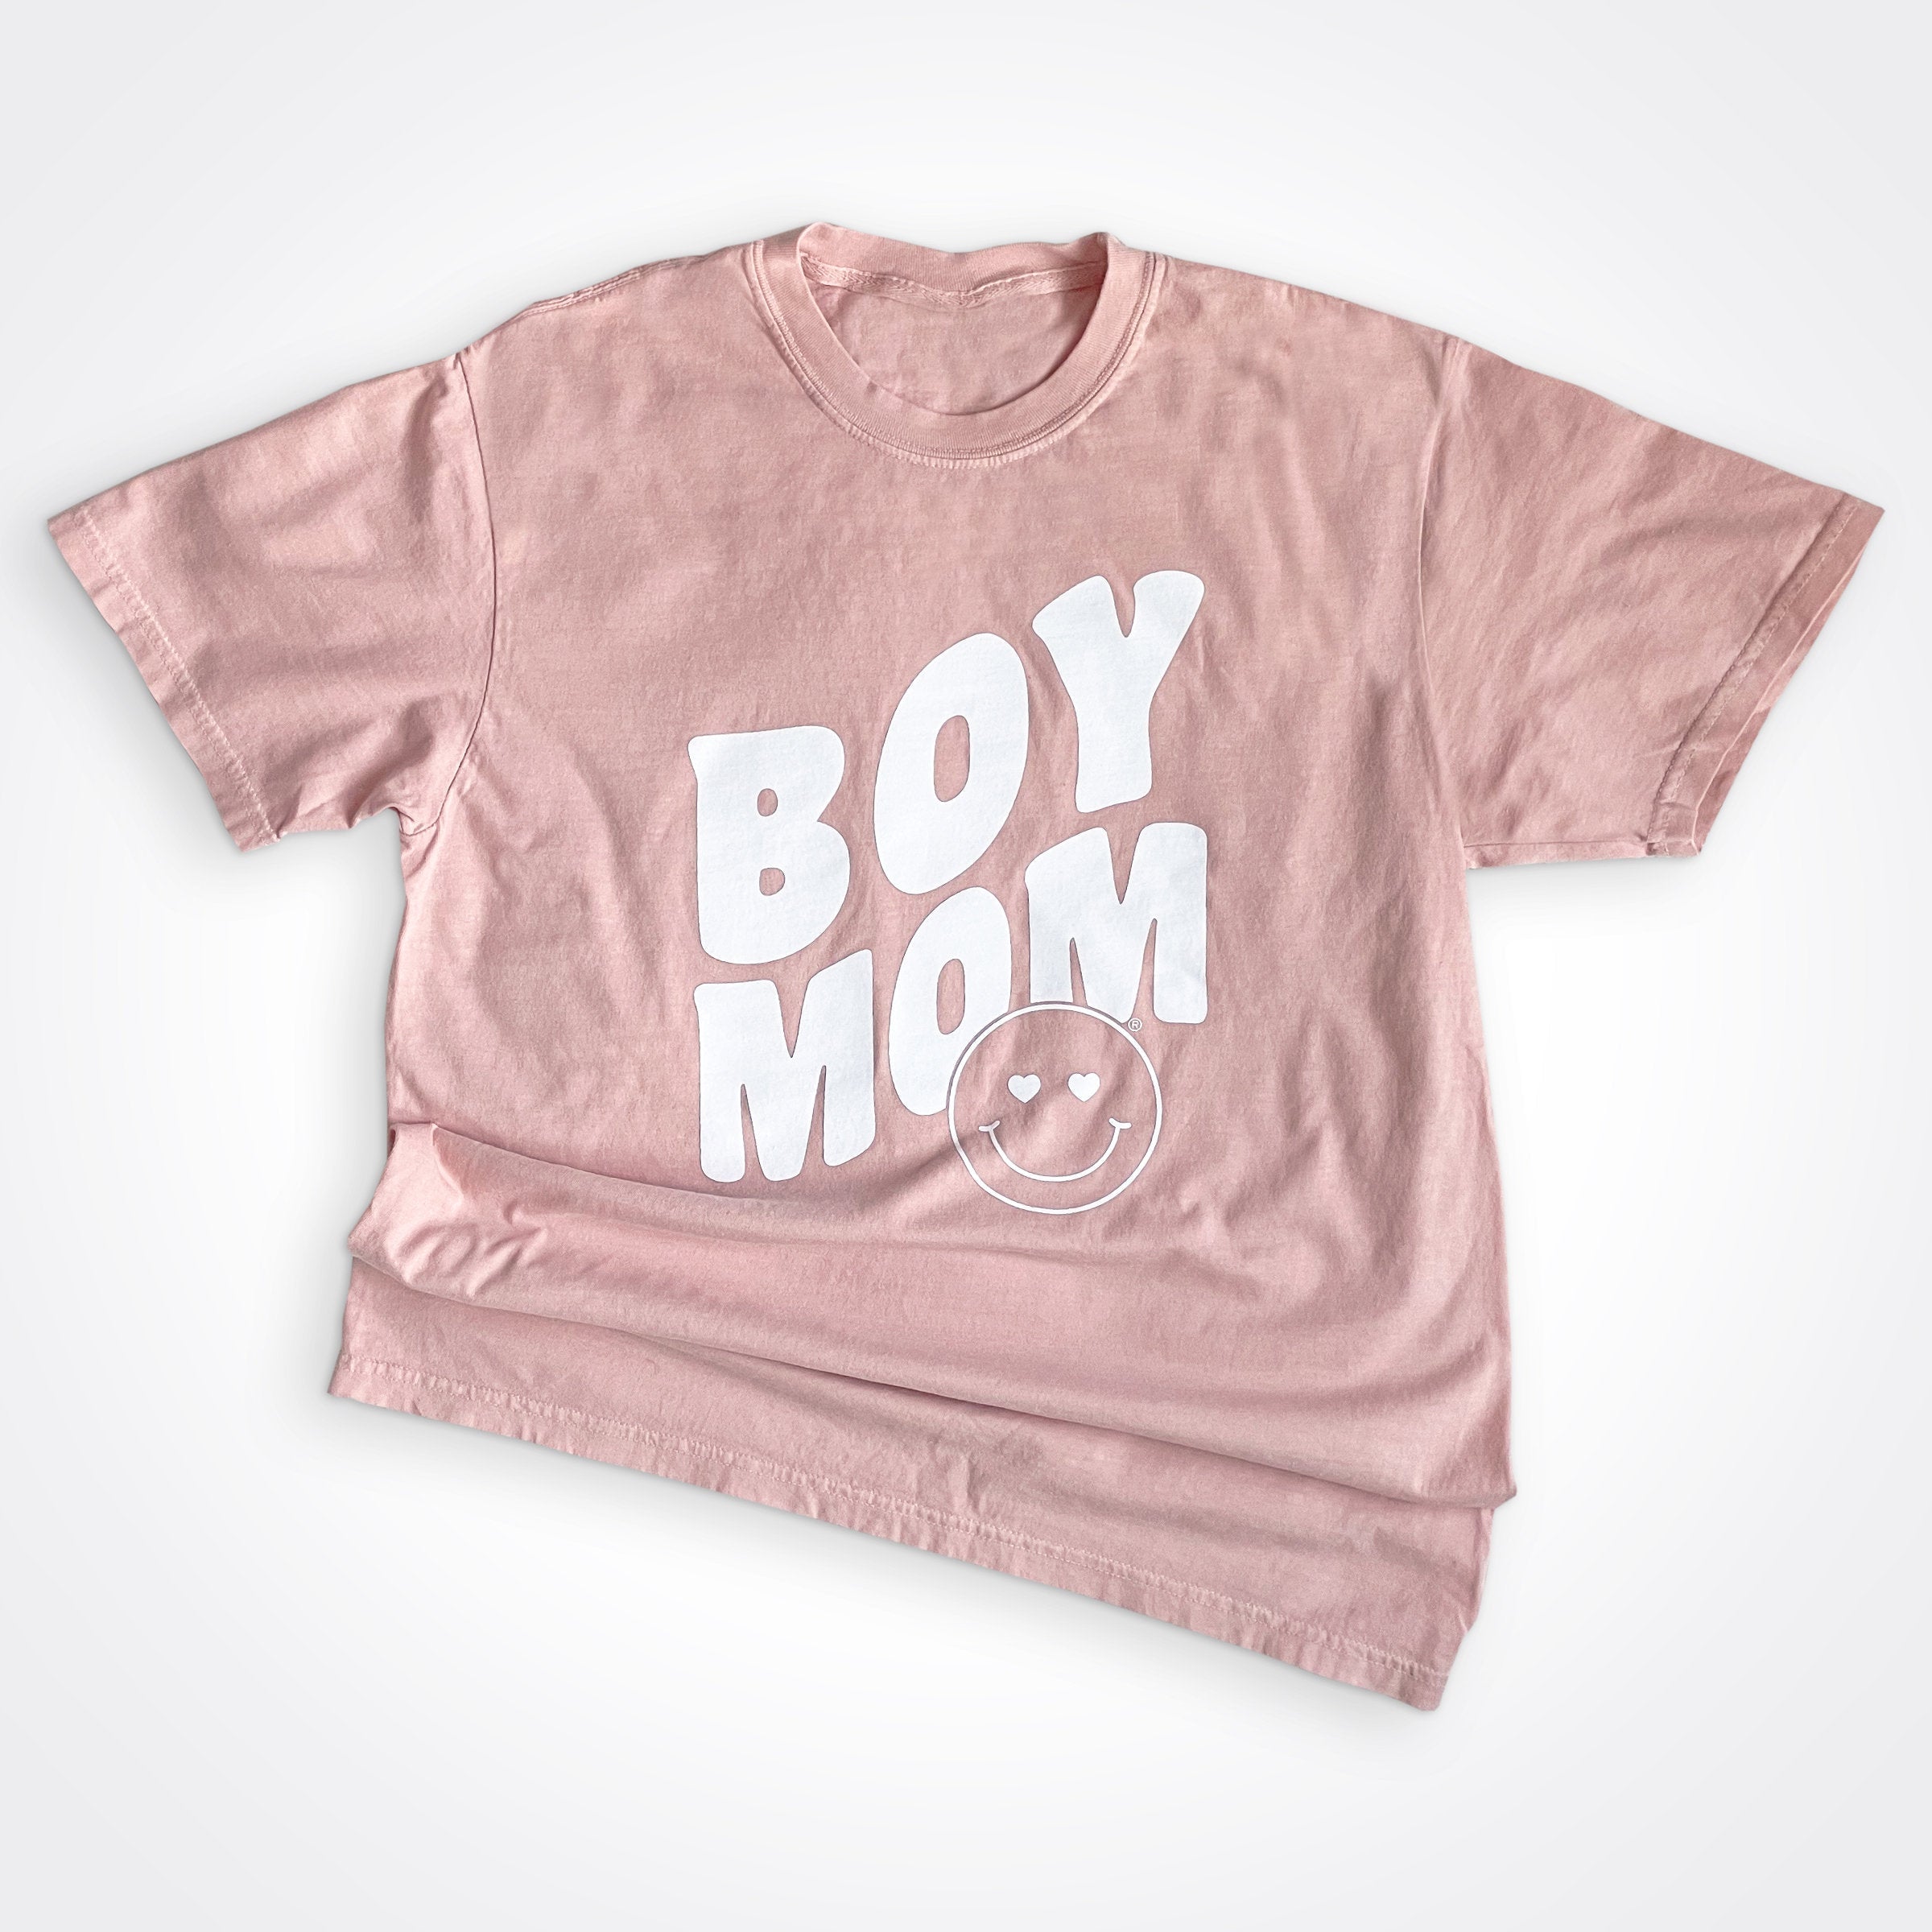 Boymom® Heart Eyes Shirt in Peachy Color WHL